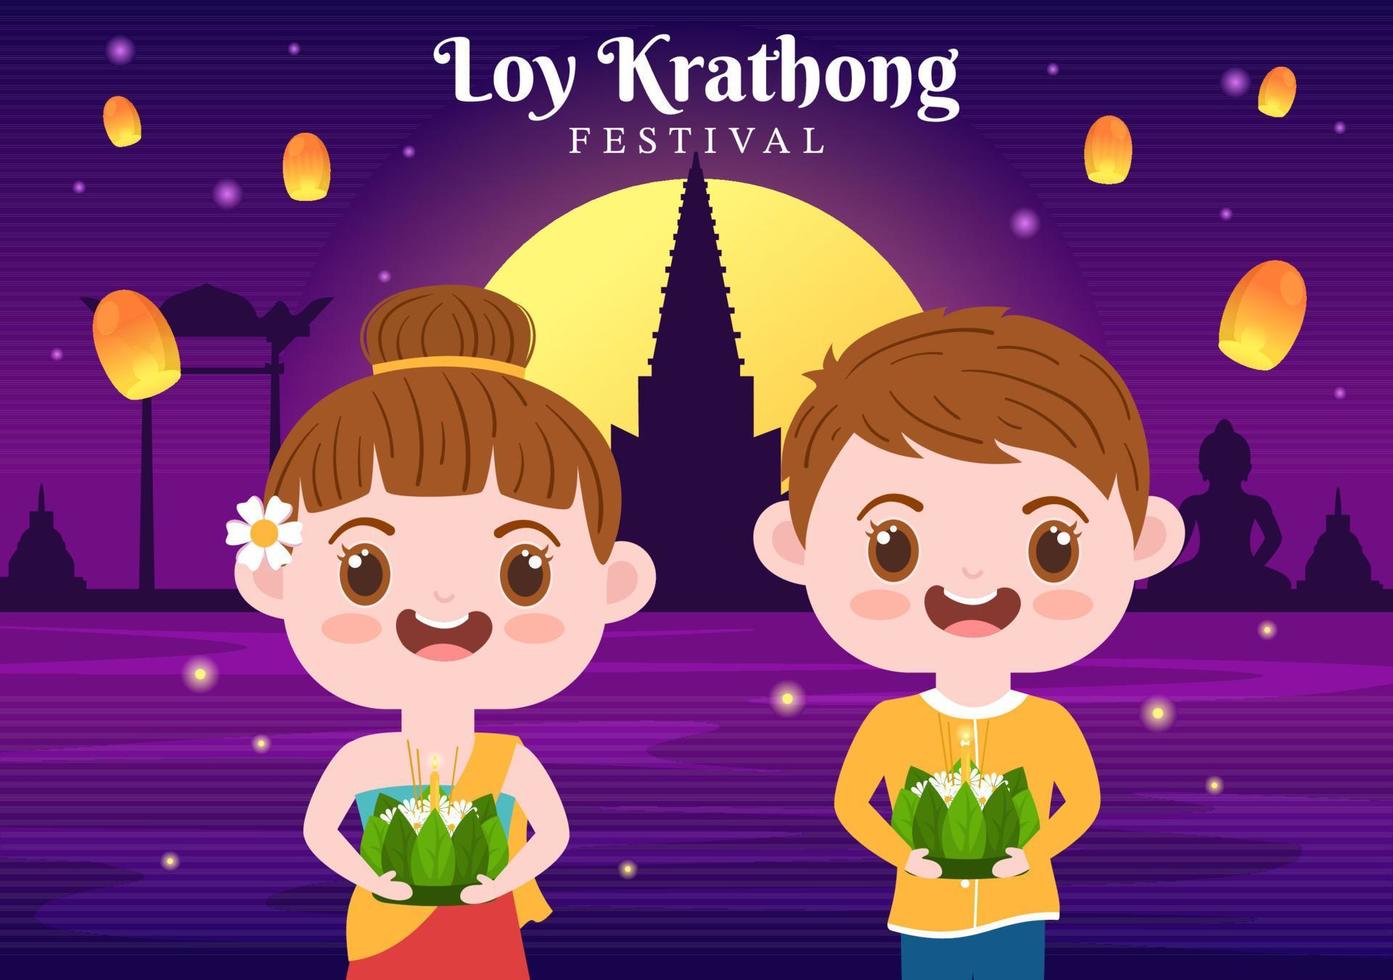 celebración del festival loy krathong en tailandia plantilla dibujada a mano ilustración plana de dibujos animados con linternas y krathongs flotando en el diseño del agua vector